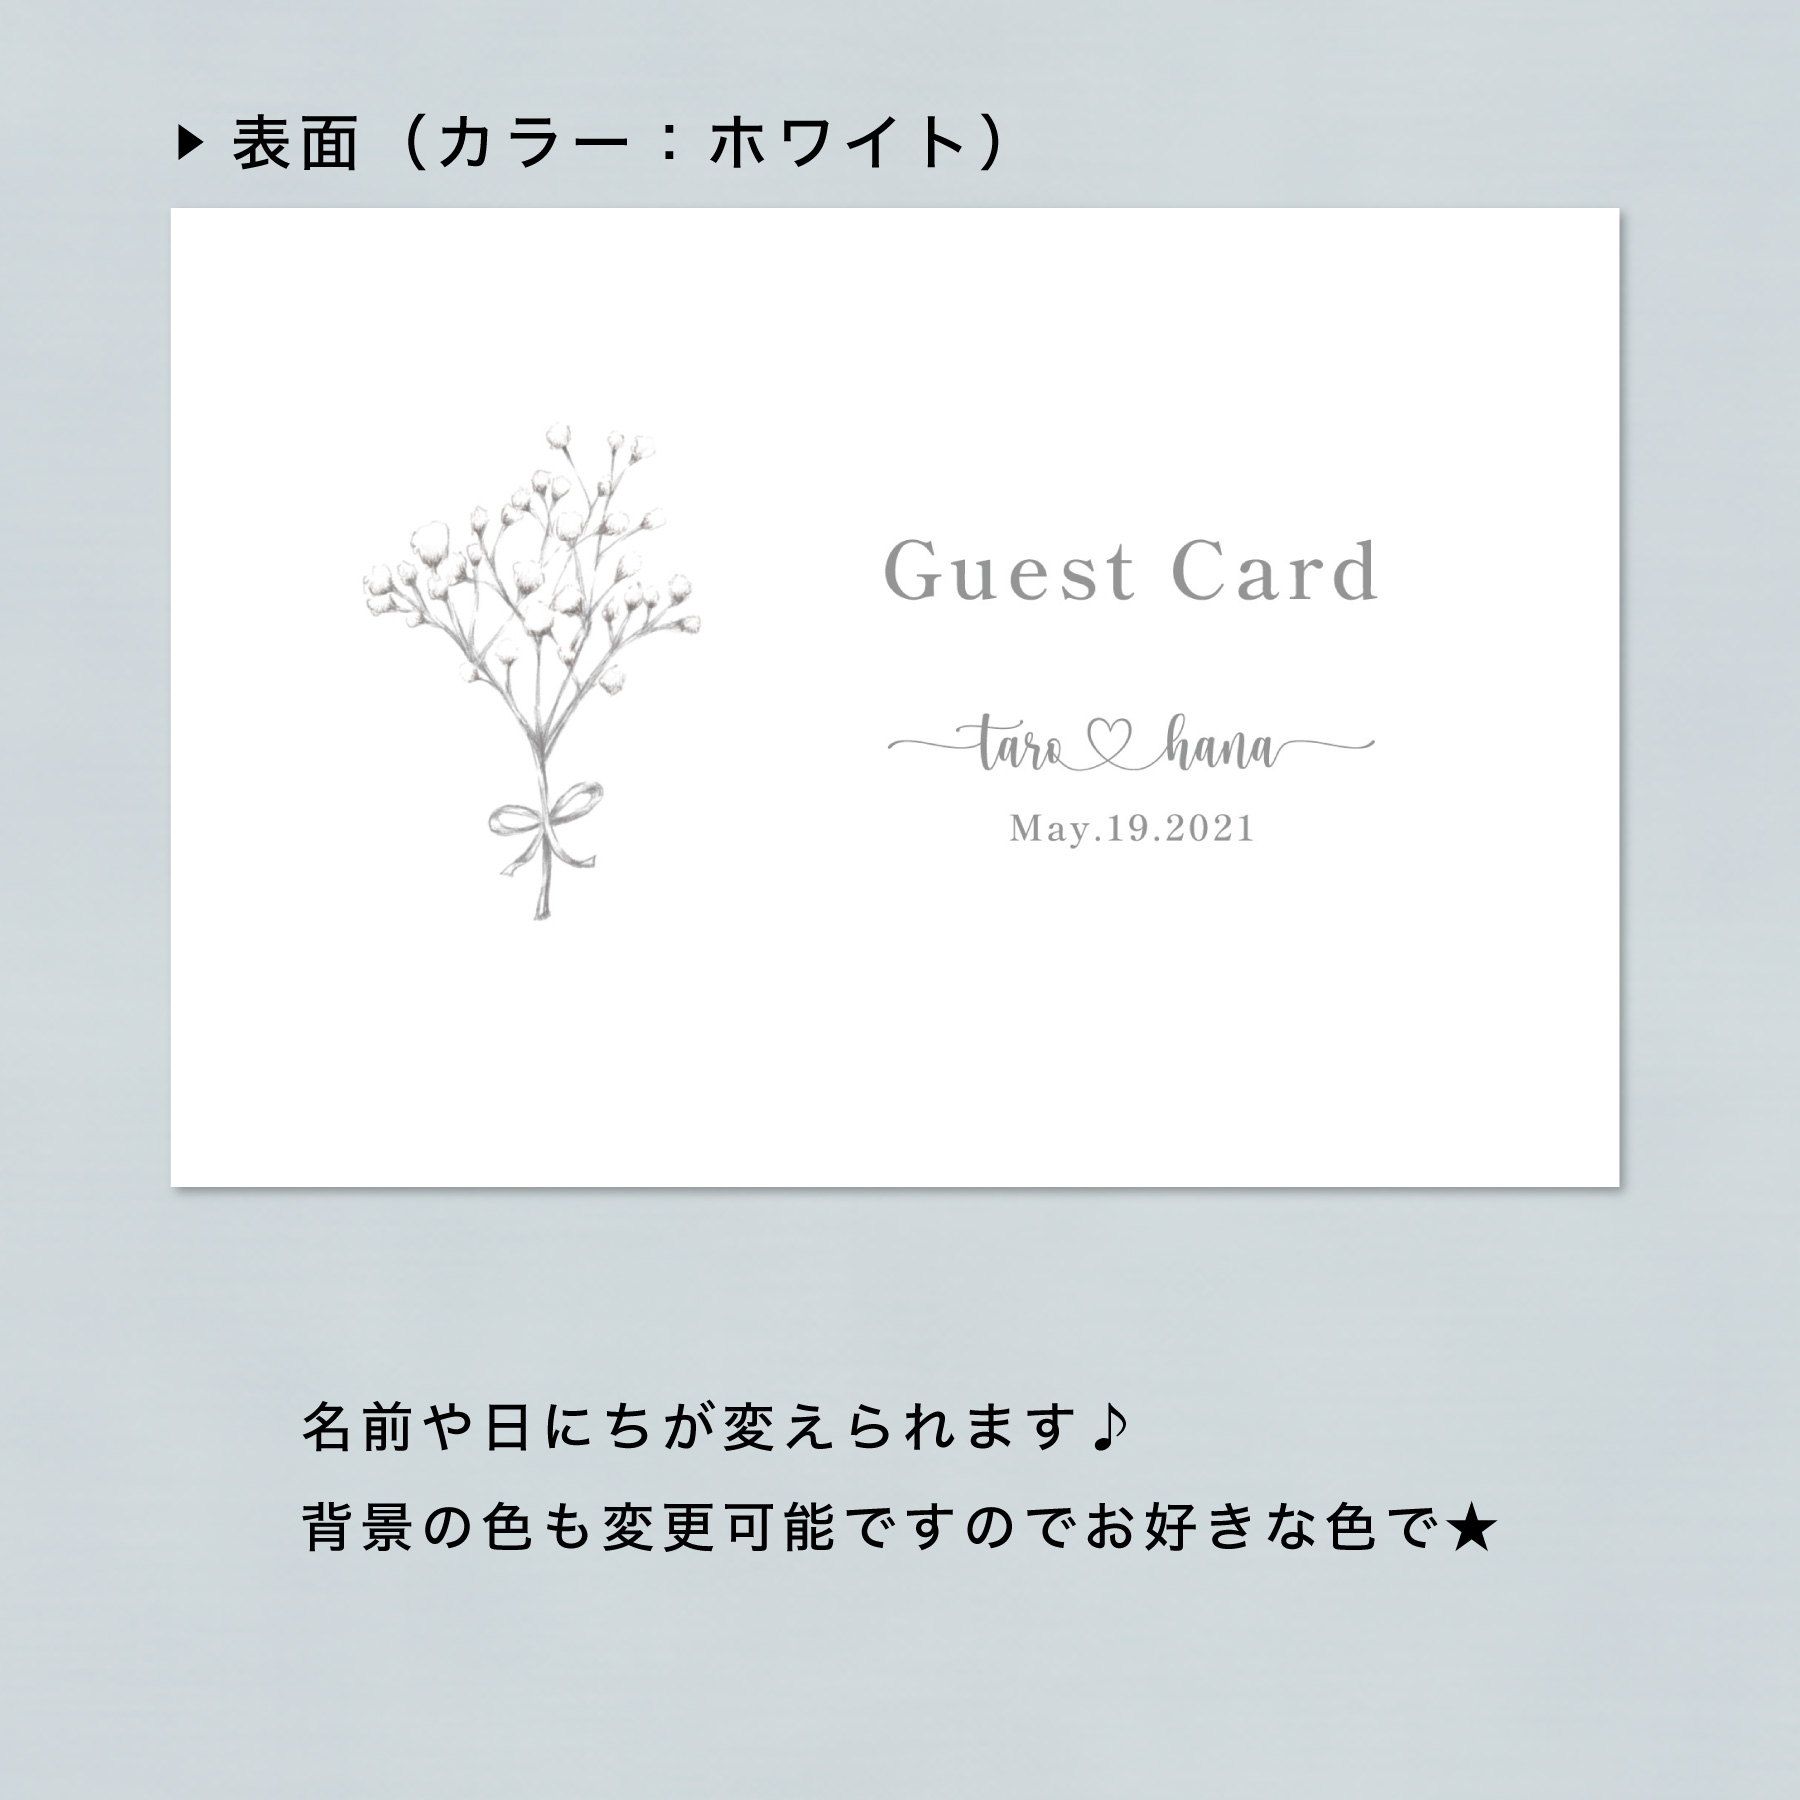 かすみ草 ゲストカード 100枚セット Hagaki001 Iichi ハンドメイド クラフト作品 手仕事品の通販